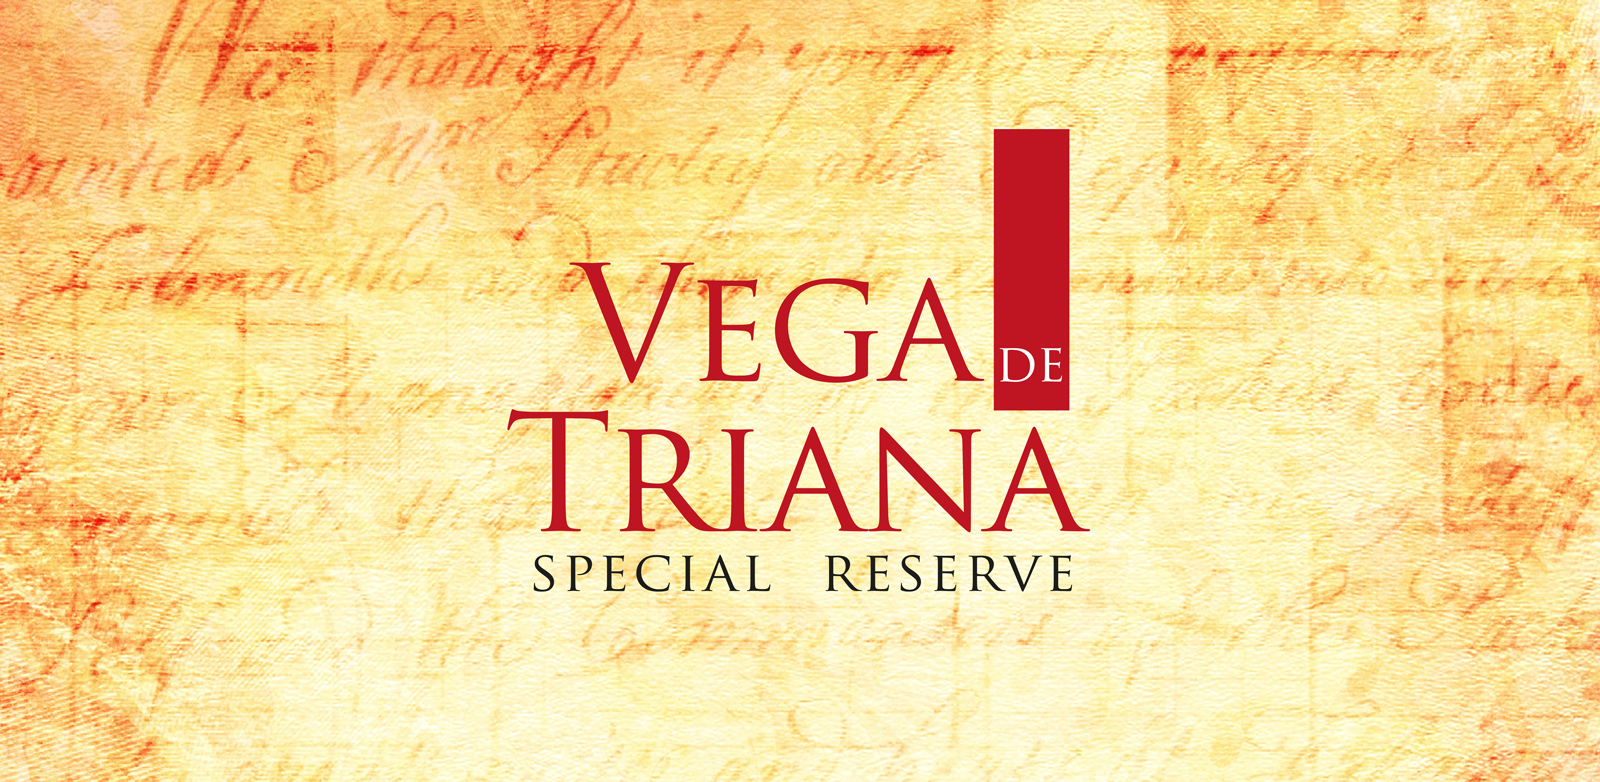 Diseño gráfico y creativo de etiquetas de aceite de oliva virgen extra para la marca VEGA DE TRIANA